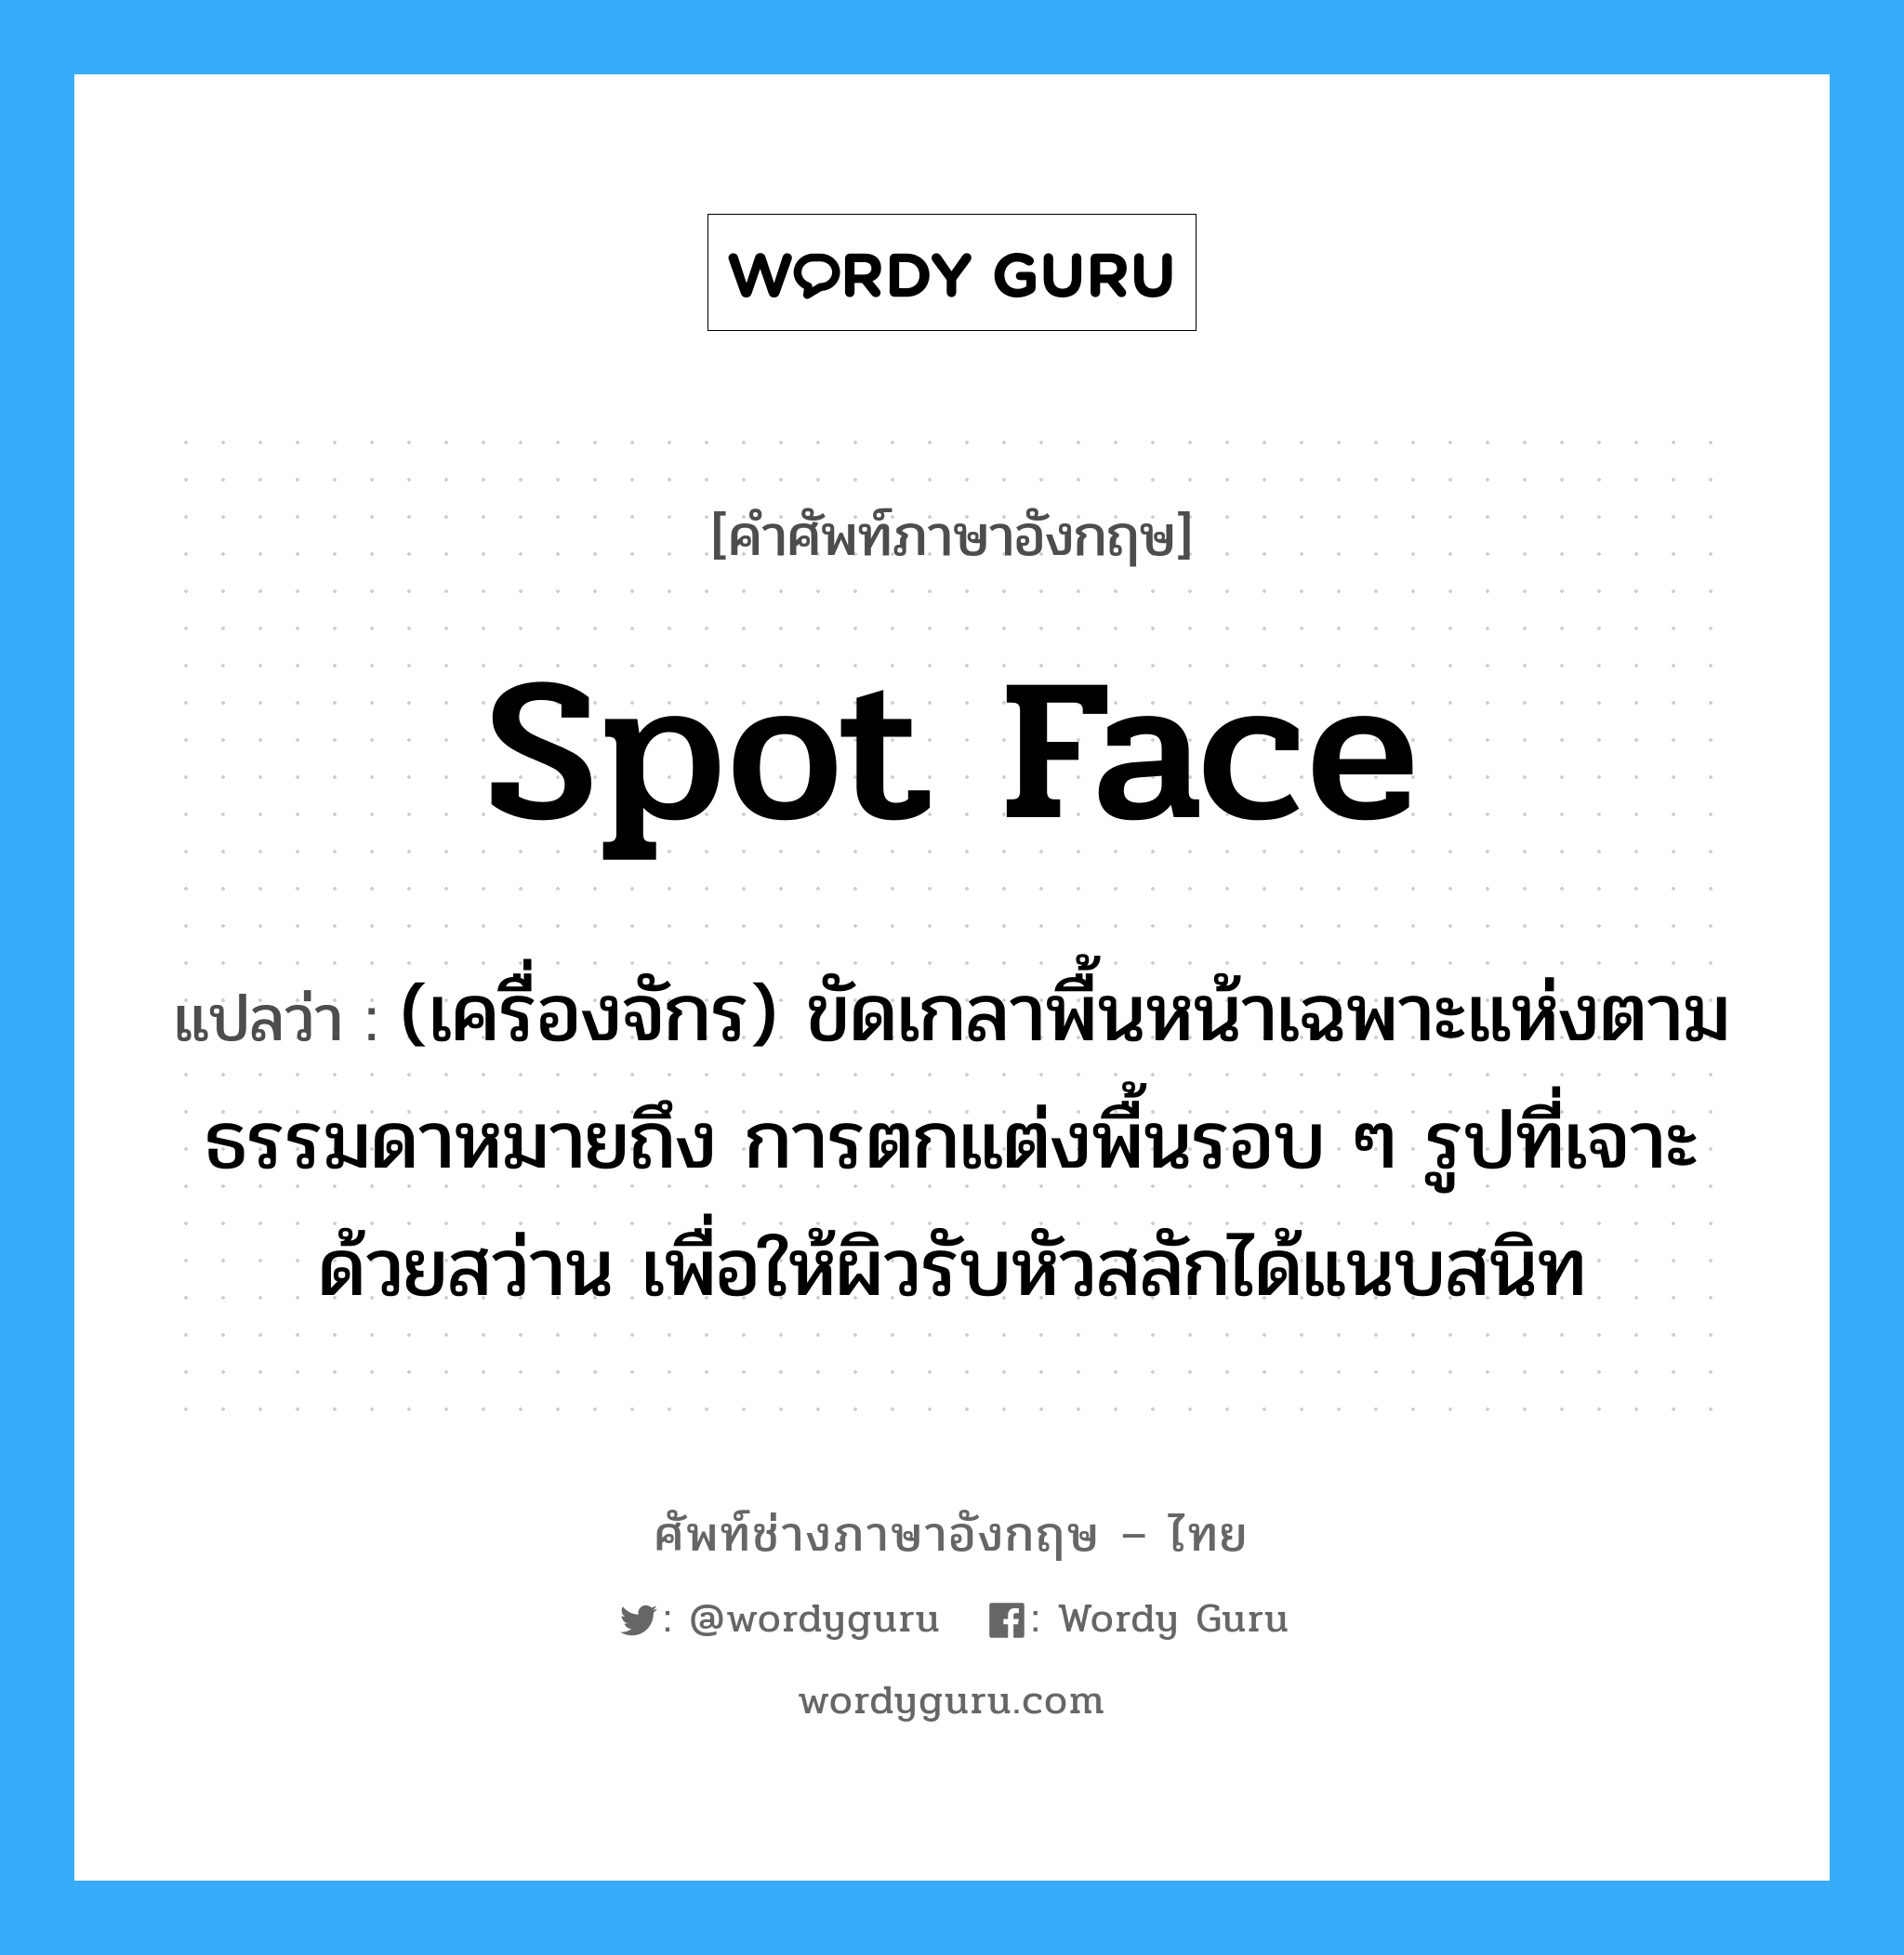 spot face แปลว่า?, คำศัพท์ช่างภาษาอังกฤษ - ไทย spot face คำศัพท์ภาษาอังกฤษ spot face แปลว่า (เครื่องจักร) ขัดเกลาพื้นหน้าเฉพาะแห่งตามธรรมดาหมายถึง การตกแต่งพื้นรอบ ๆ รูปที่เจาะด้วยสว่าน เพื่อให้ผิวรับหัวสลักได้แนบสนิท